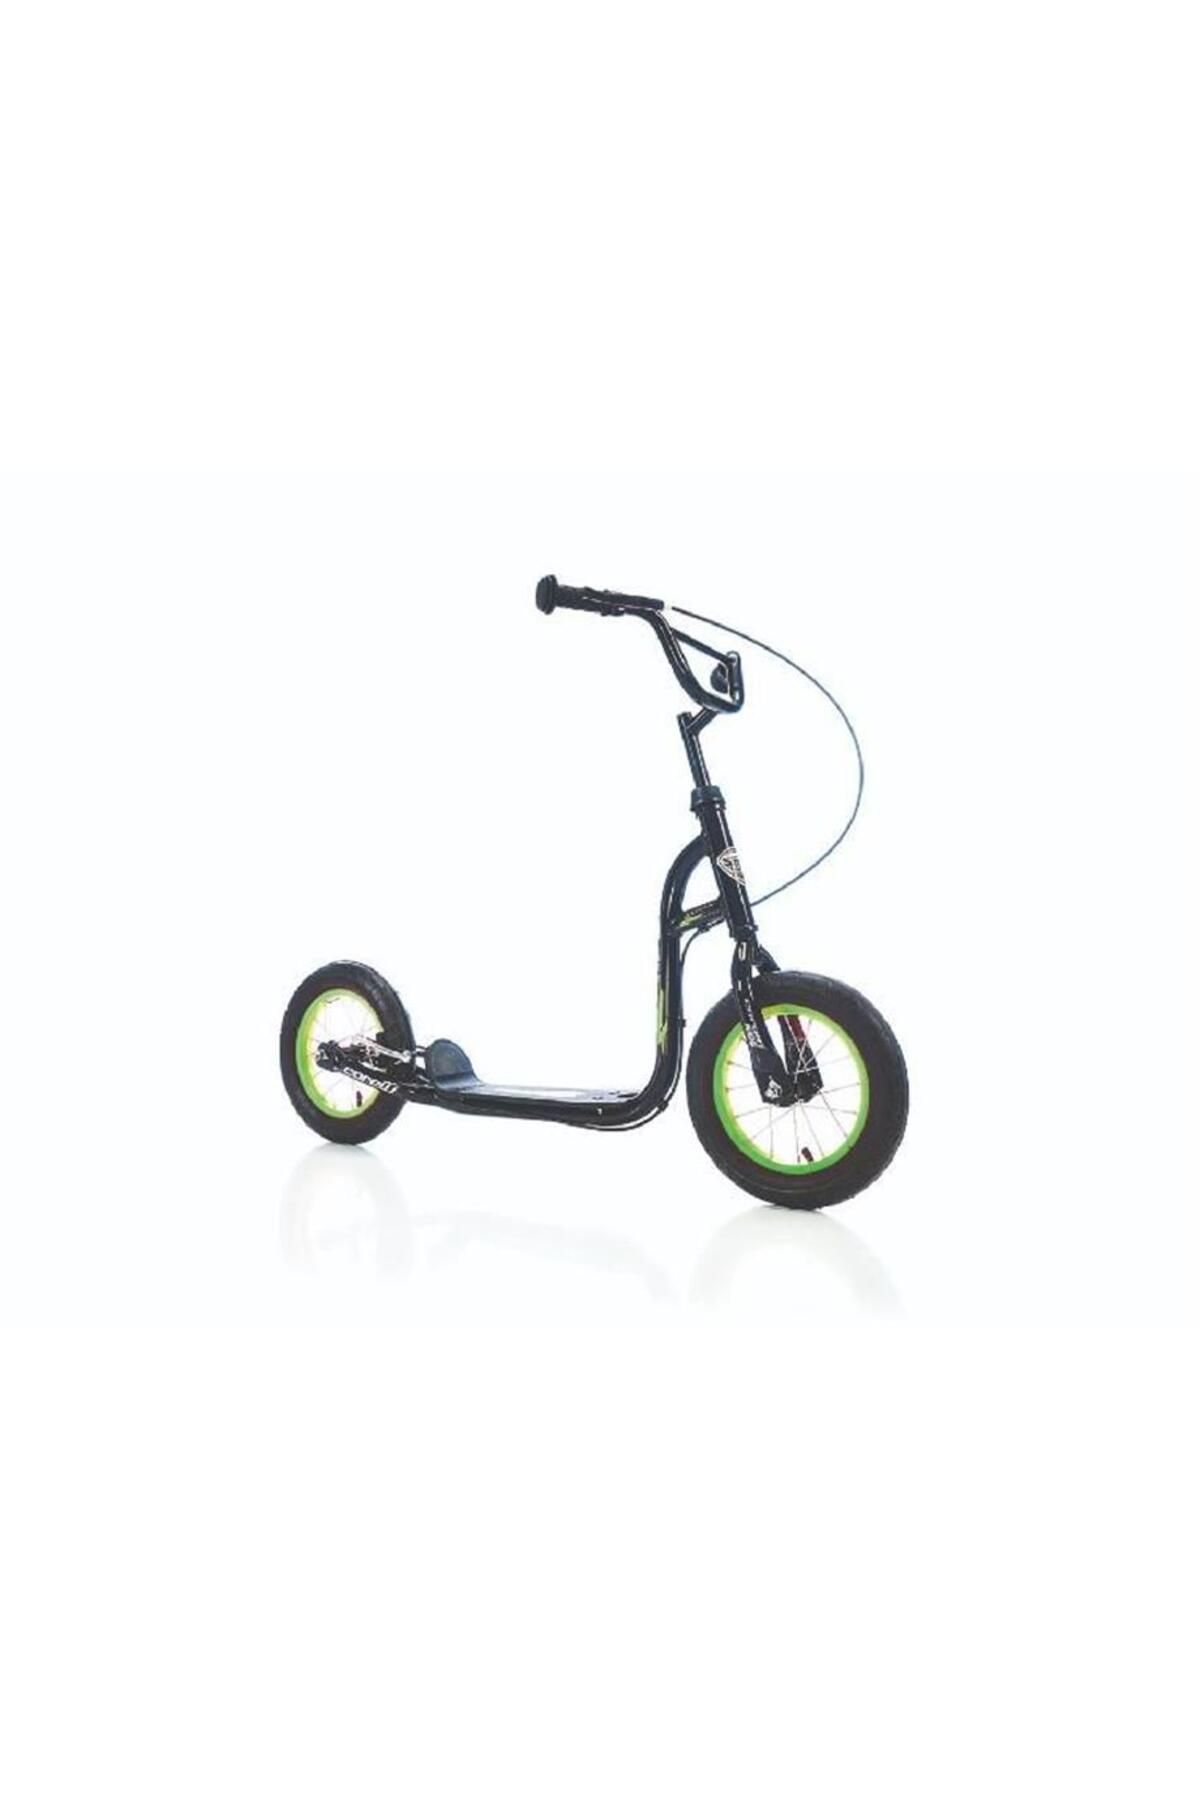 Corelli Slippy Scooter V 12 Jant Siyah Yeşil